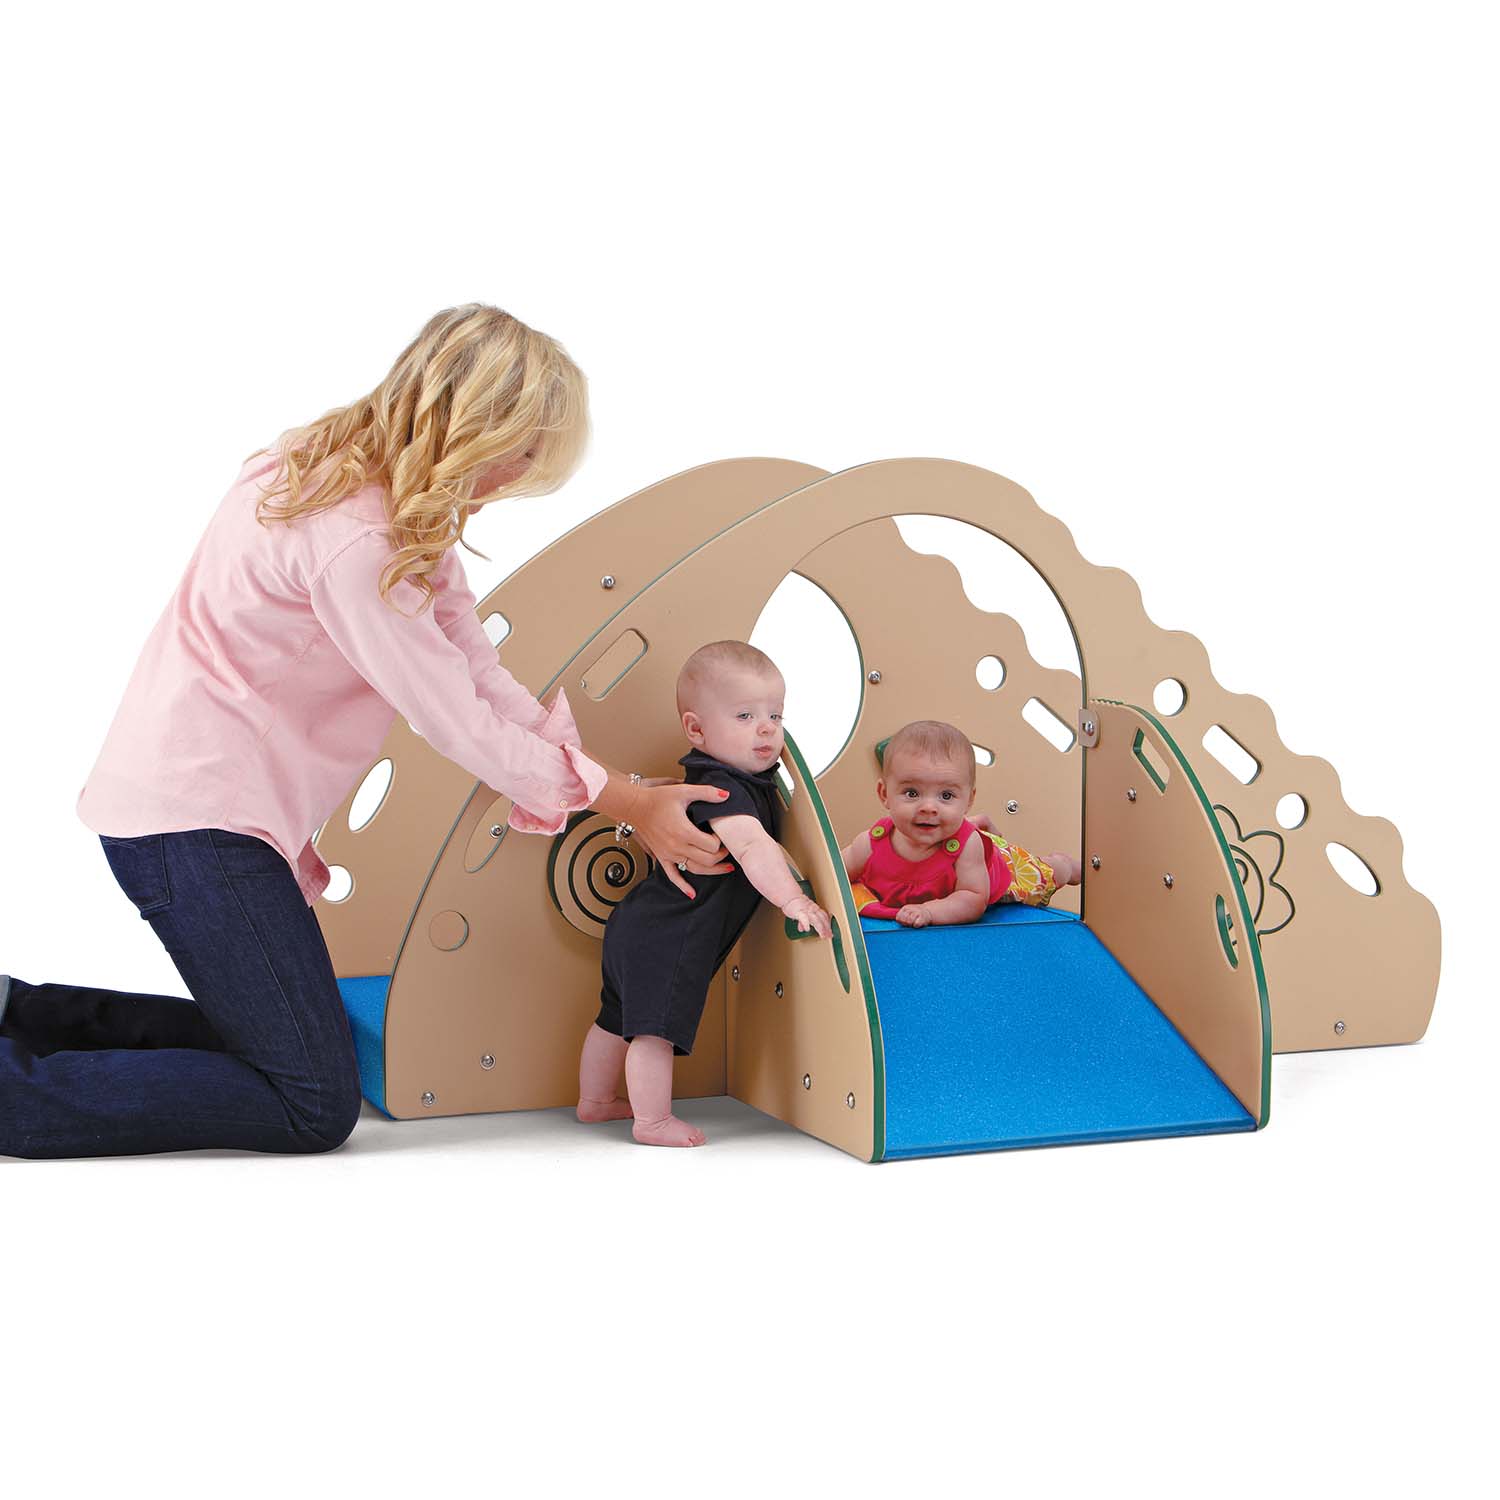 Crawl & Toddle Climber, ComfyTuff Platform